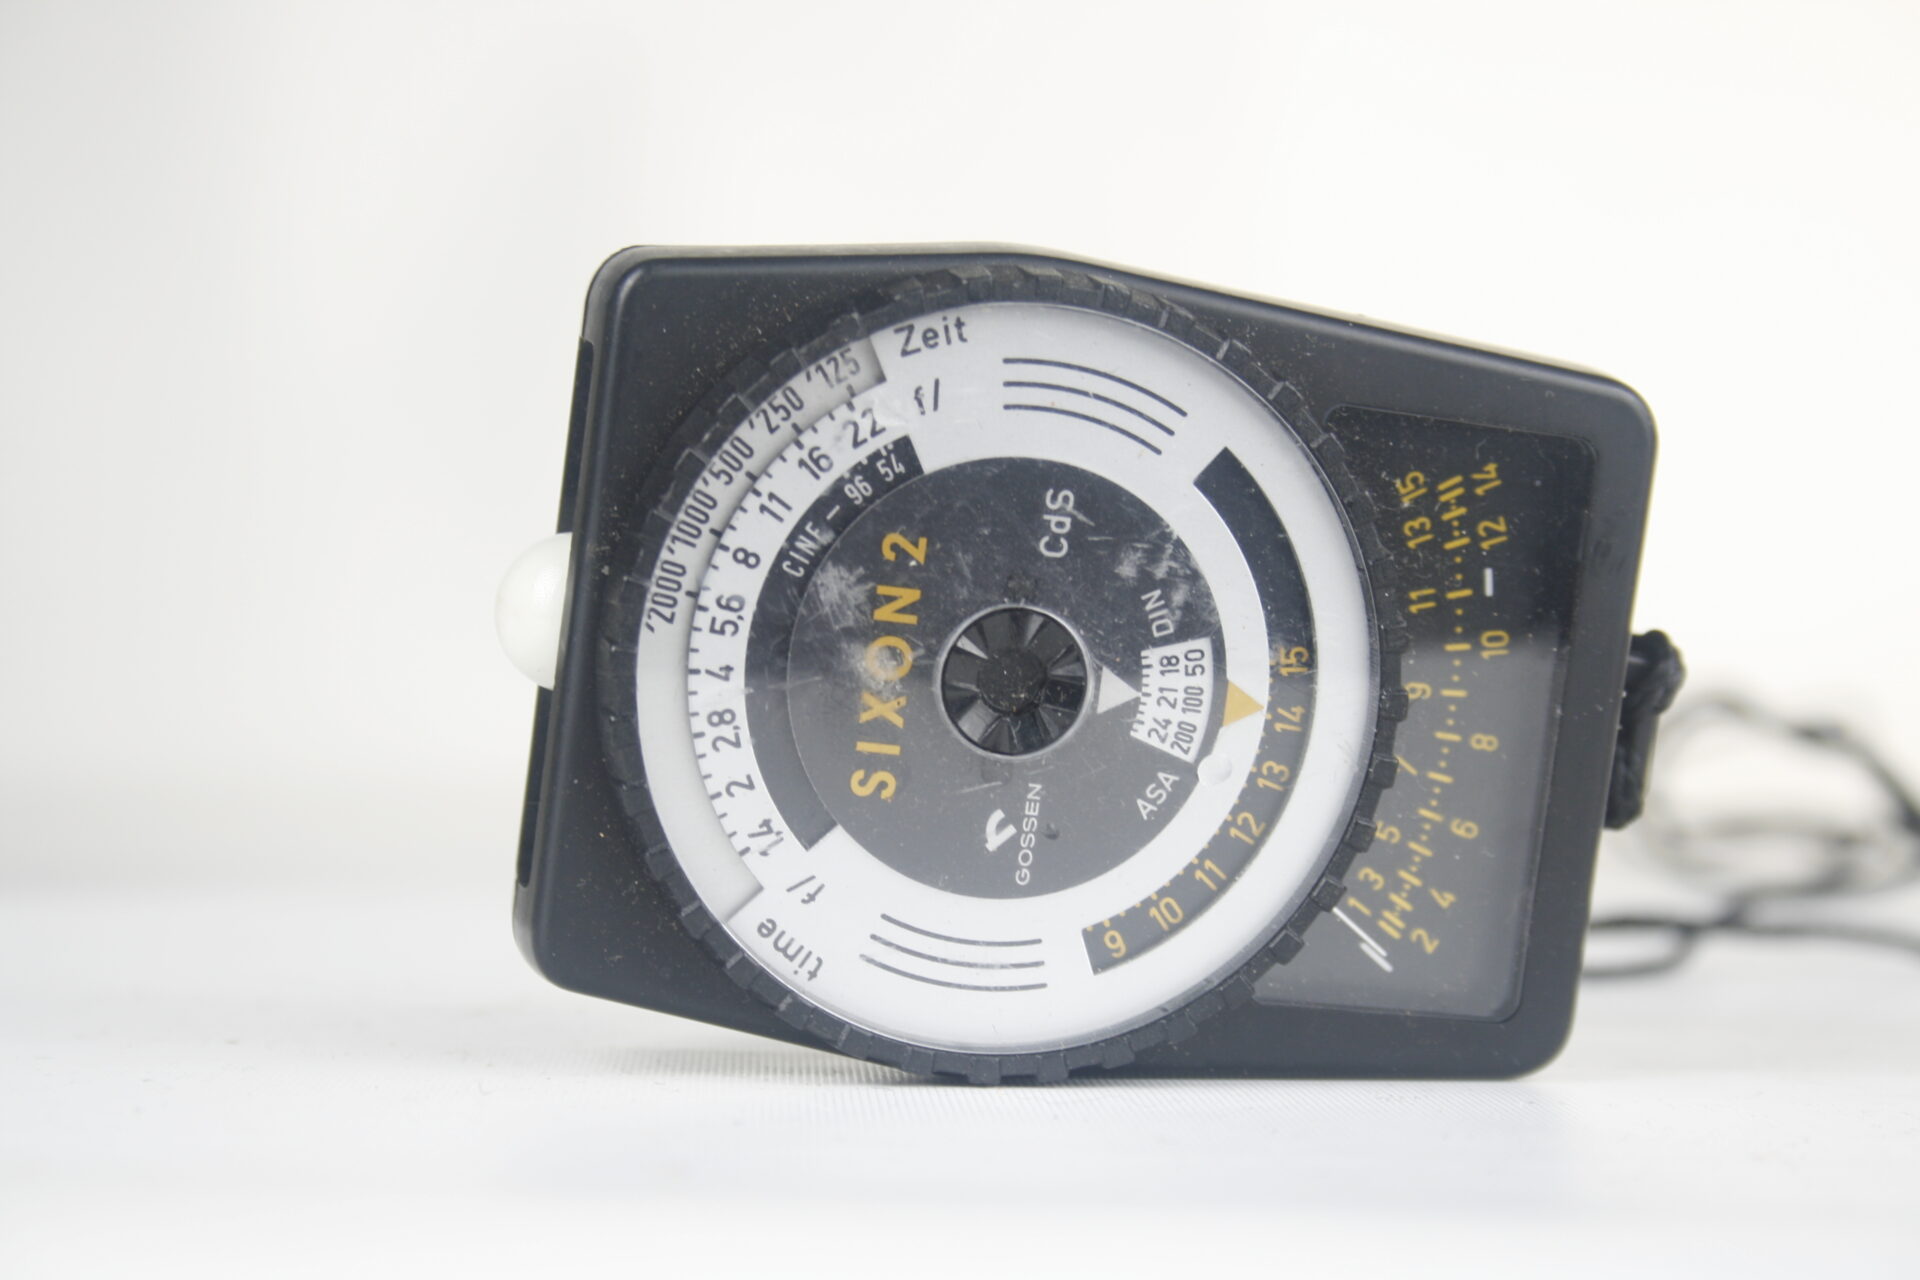 Gossen Sixon 2. Cds lichtmeter. Object en lichtmeter. F1.4-22. 2000 sec-15 minuten. 1973. Duitsland